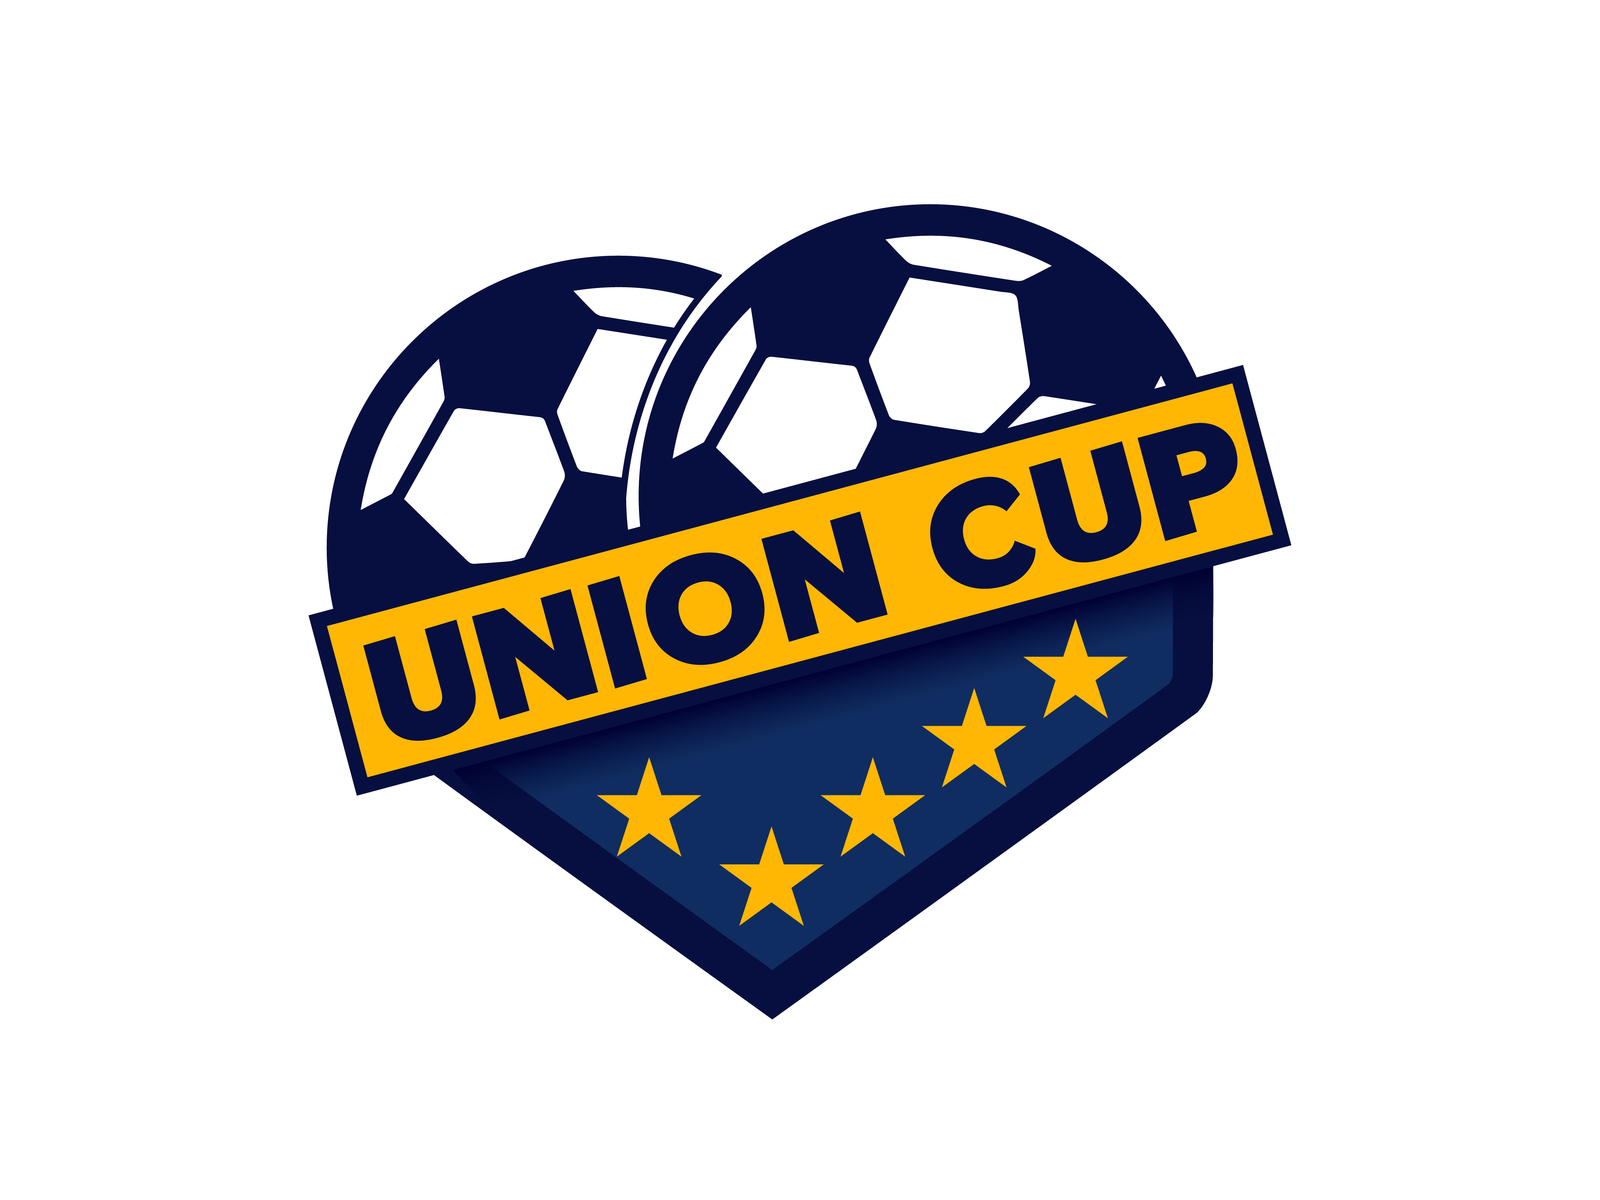 Union Cup Football league Logo Design by Istiak Ahmed Shawon on Dribbble